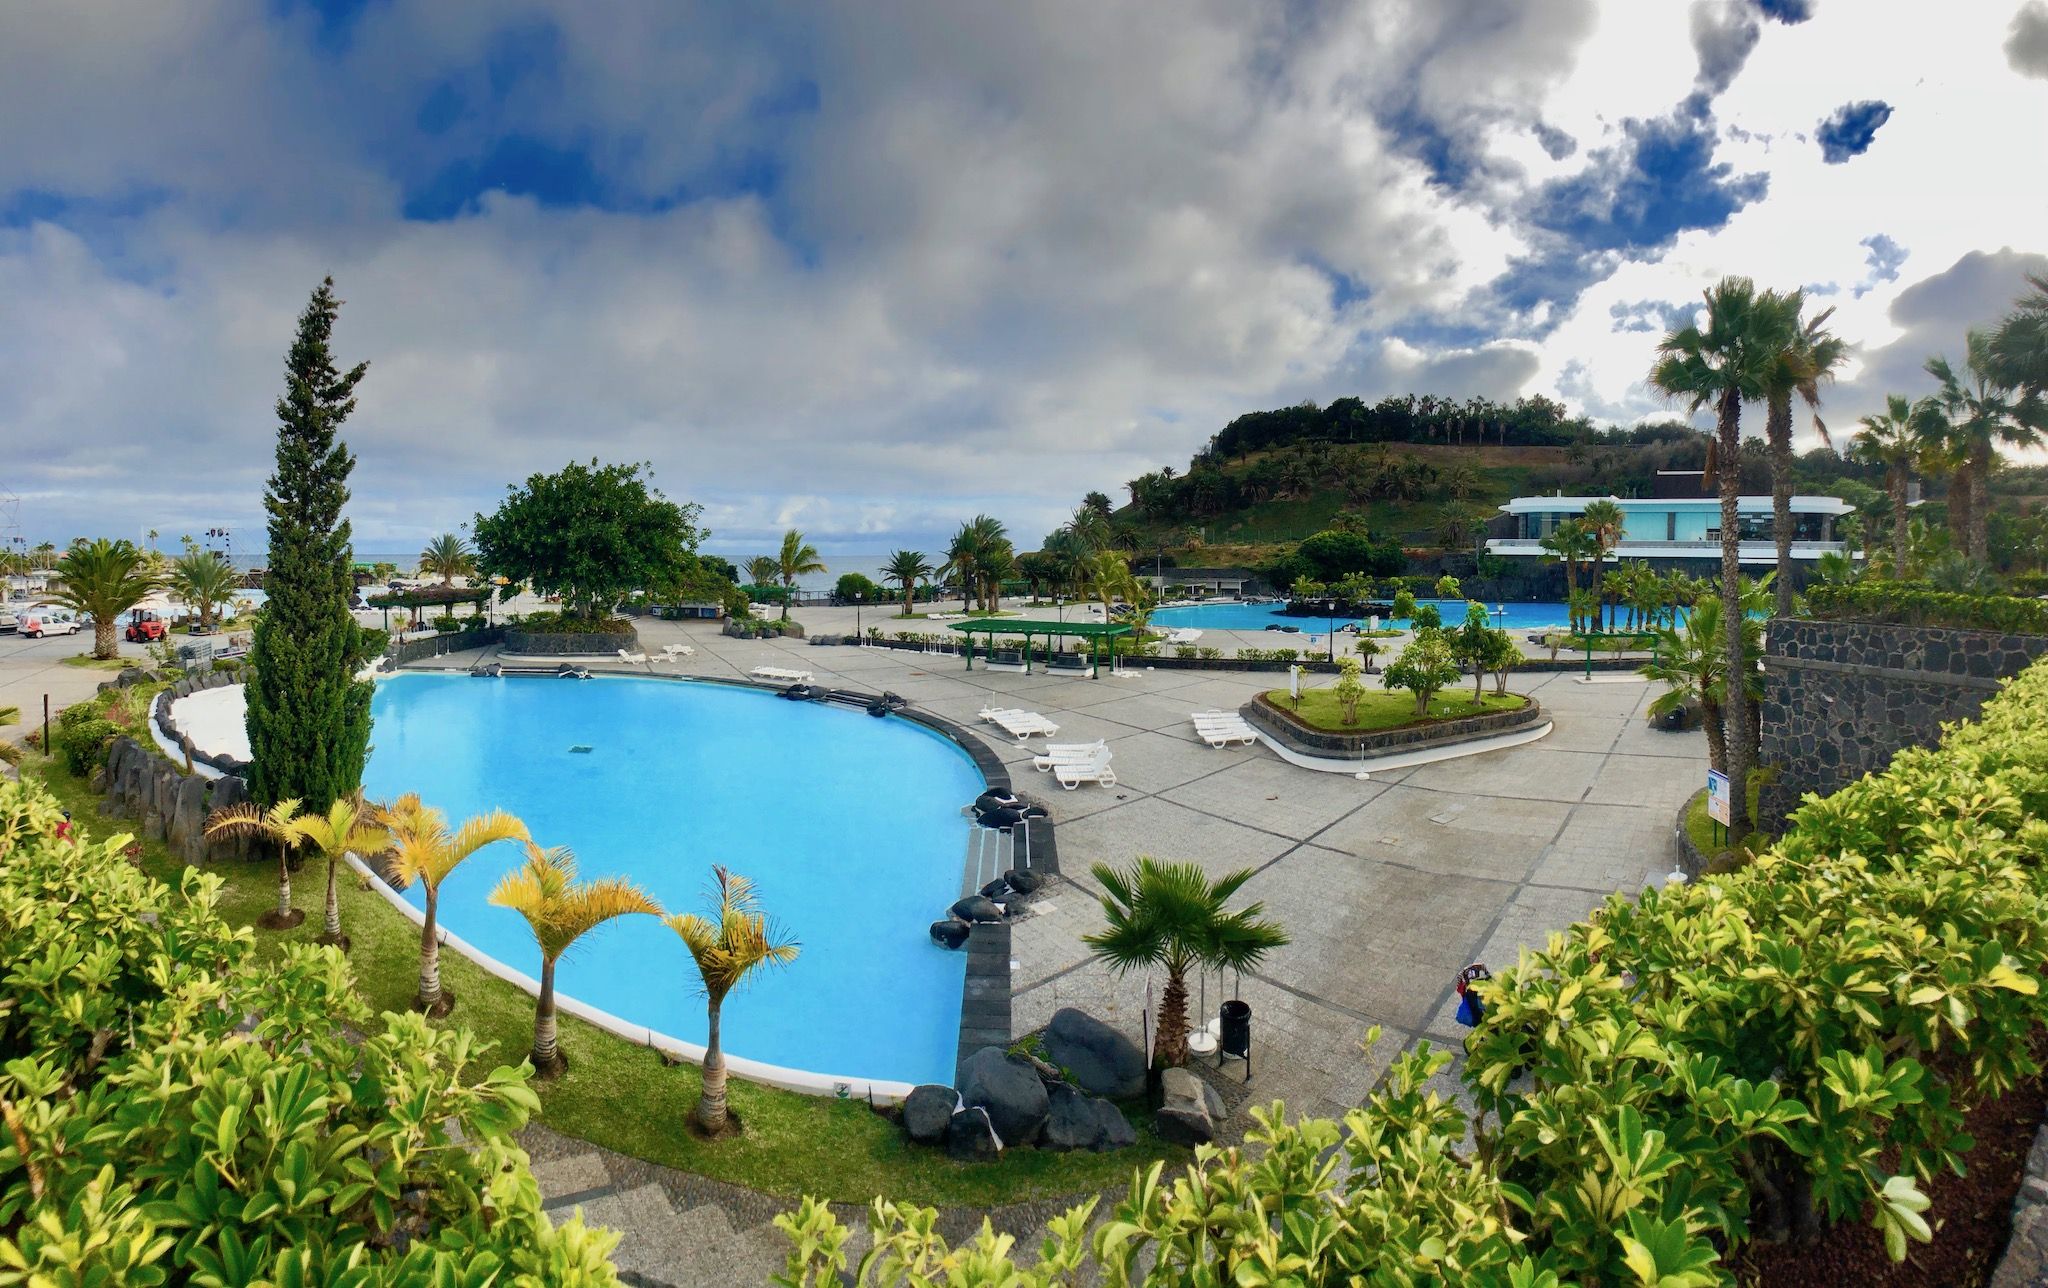 Parque Marítimo César Manrique: la piscina del puerto de Santa Cruz de Tenerife fue diseñada por el artista excepcional canario. Foto: Sascha Tegtmeyer